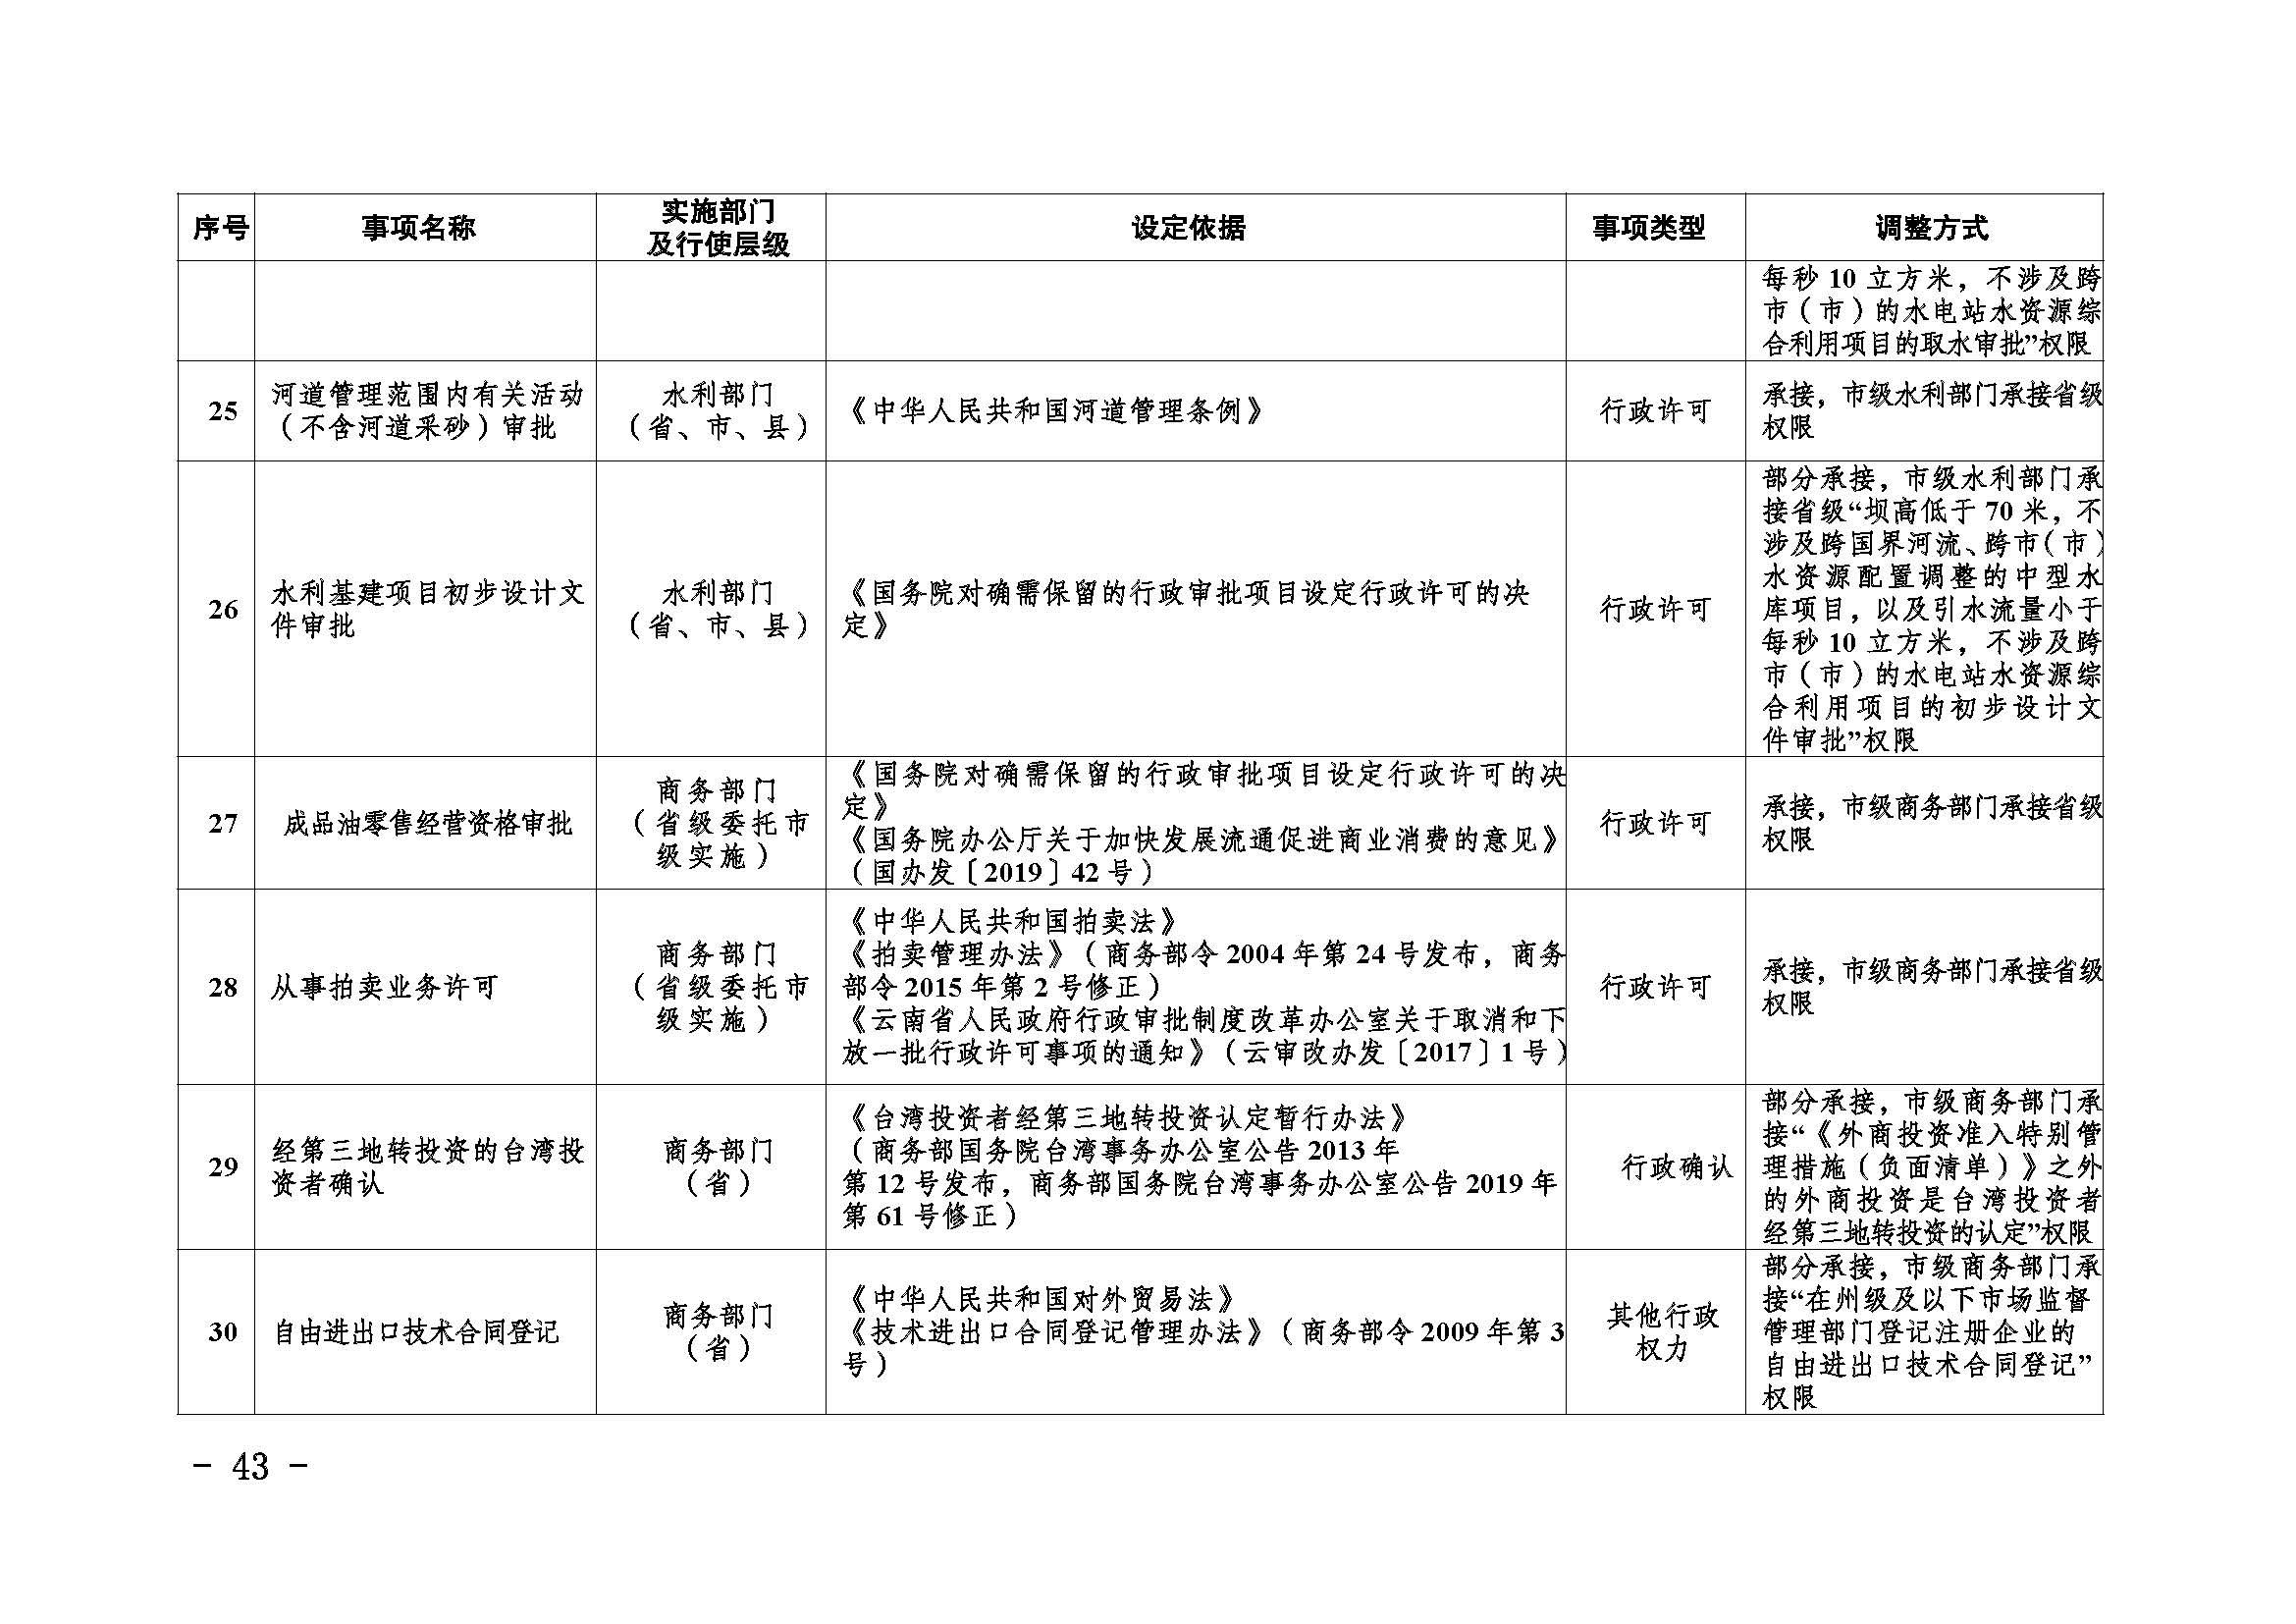 临沧市人民政府办公室关于做好调整370项行政权力事项工作的通知_页面_43